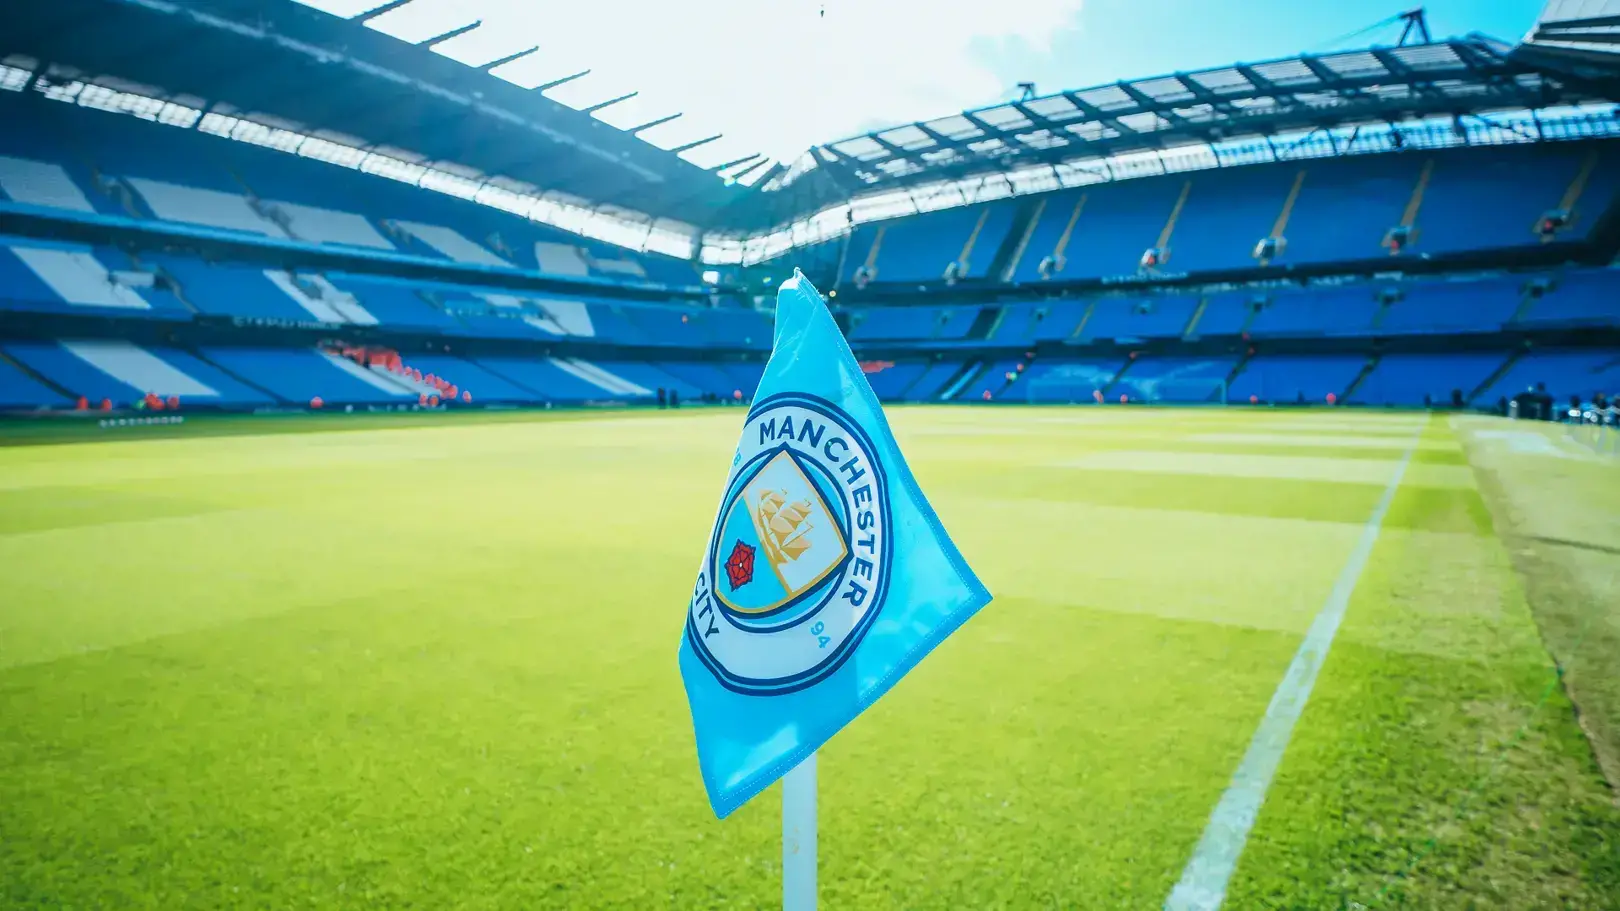 Câu lạc bộ bóng đá Manchester City - Tin tức, lịch thi đấu, kết quả và thông tin chính thức